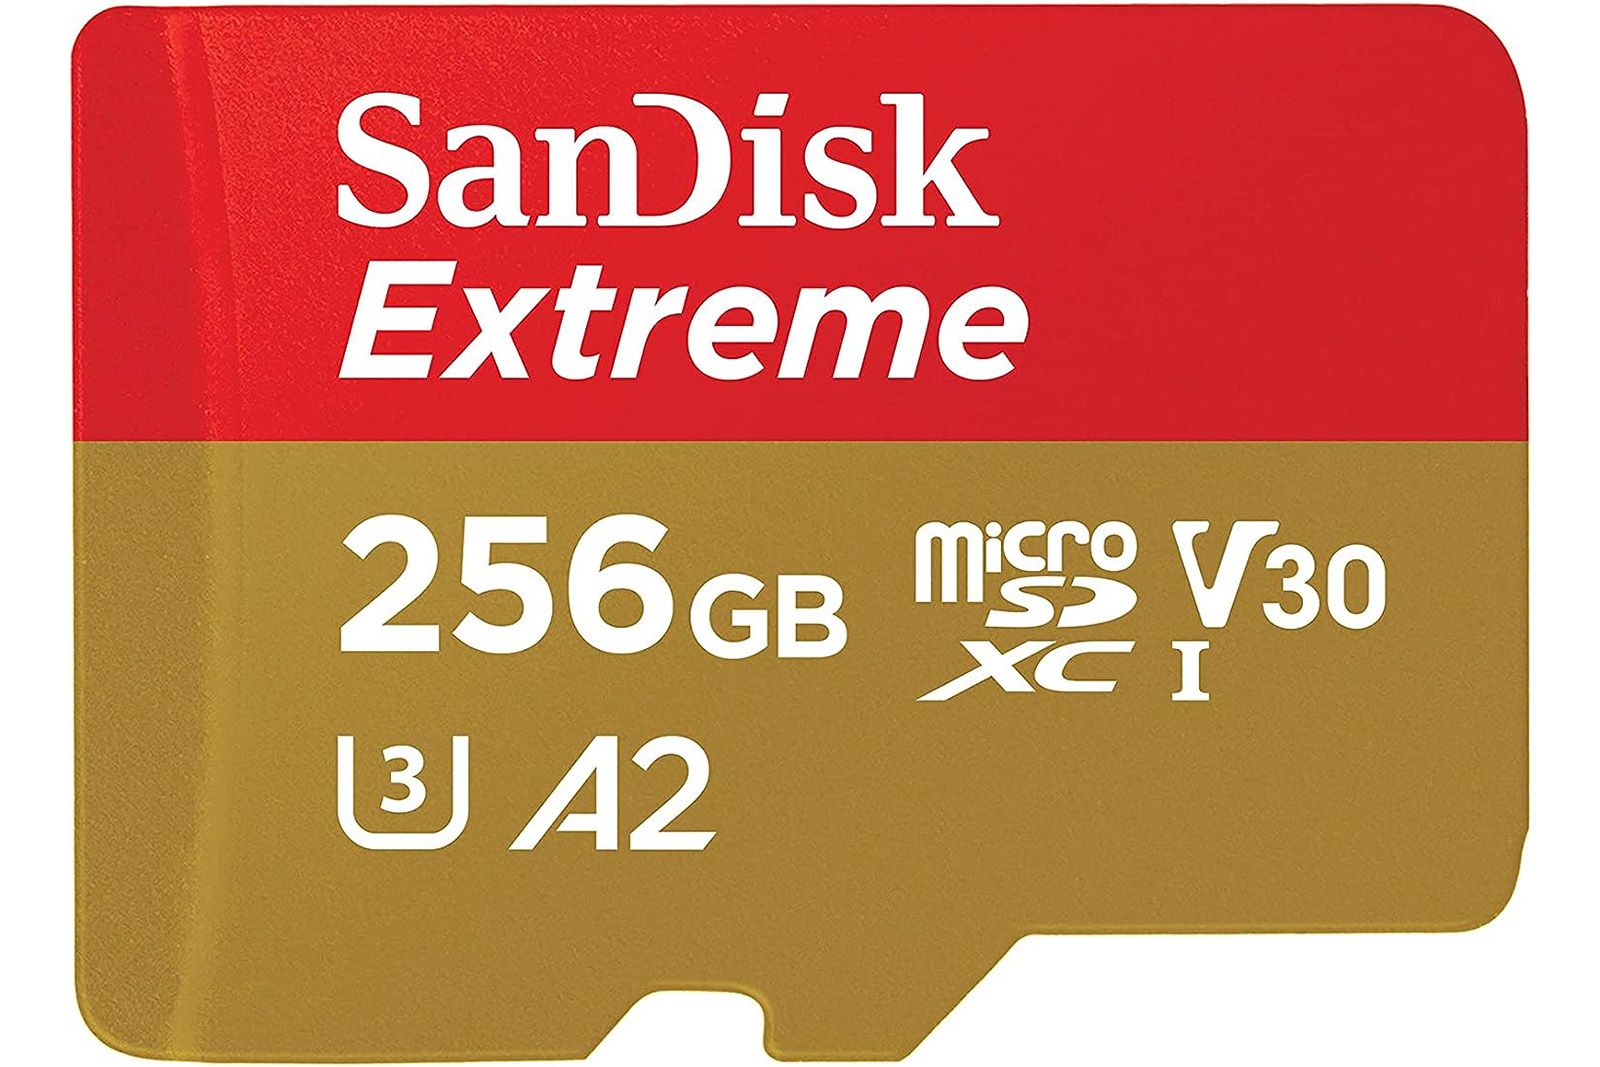 SanDisk Extreme microSDXC